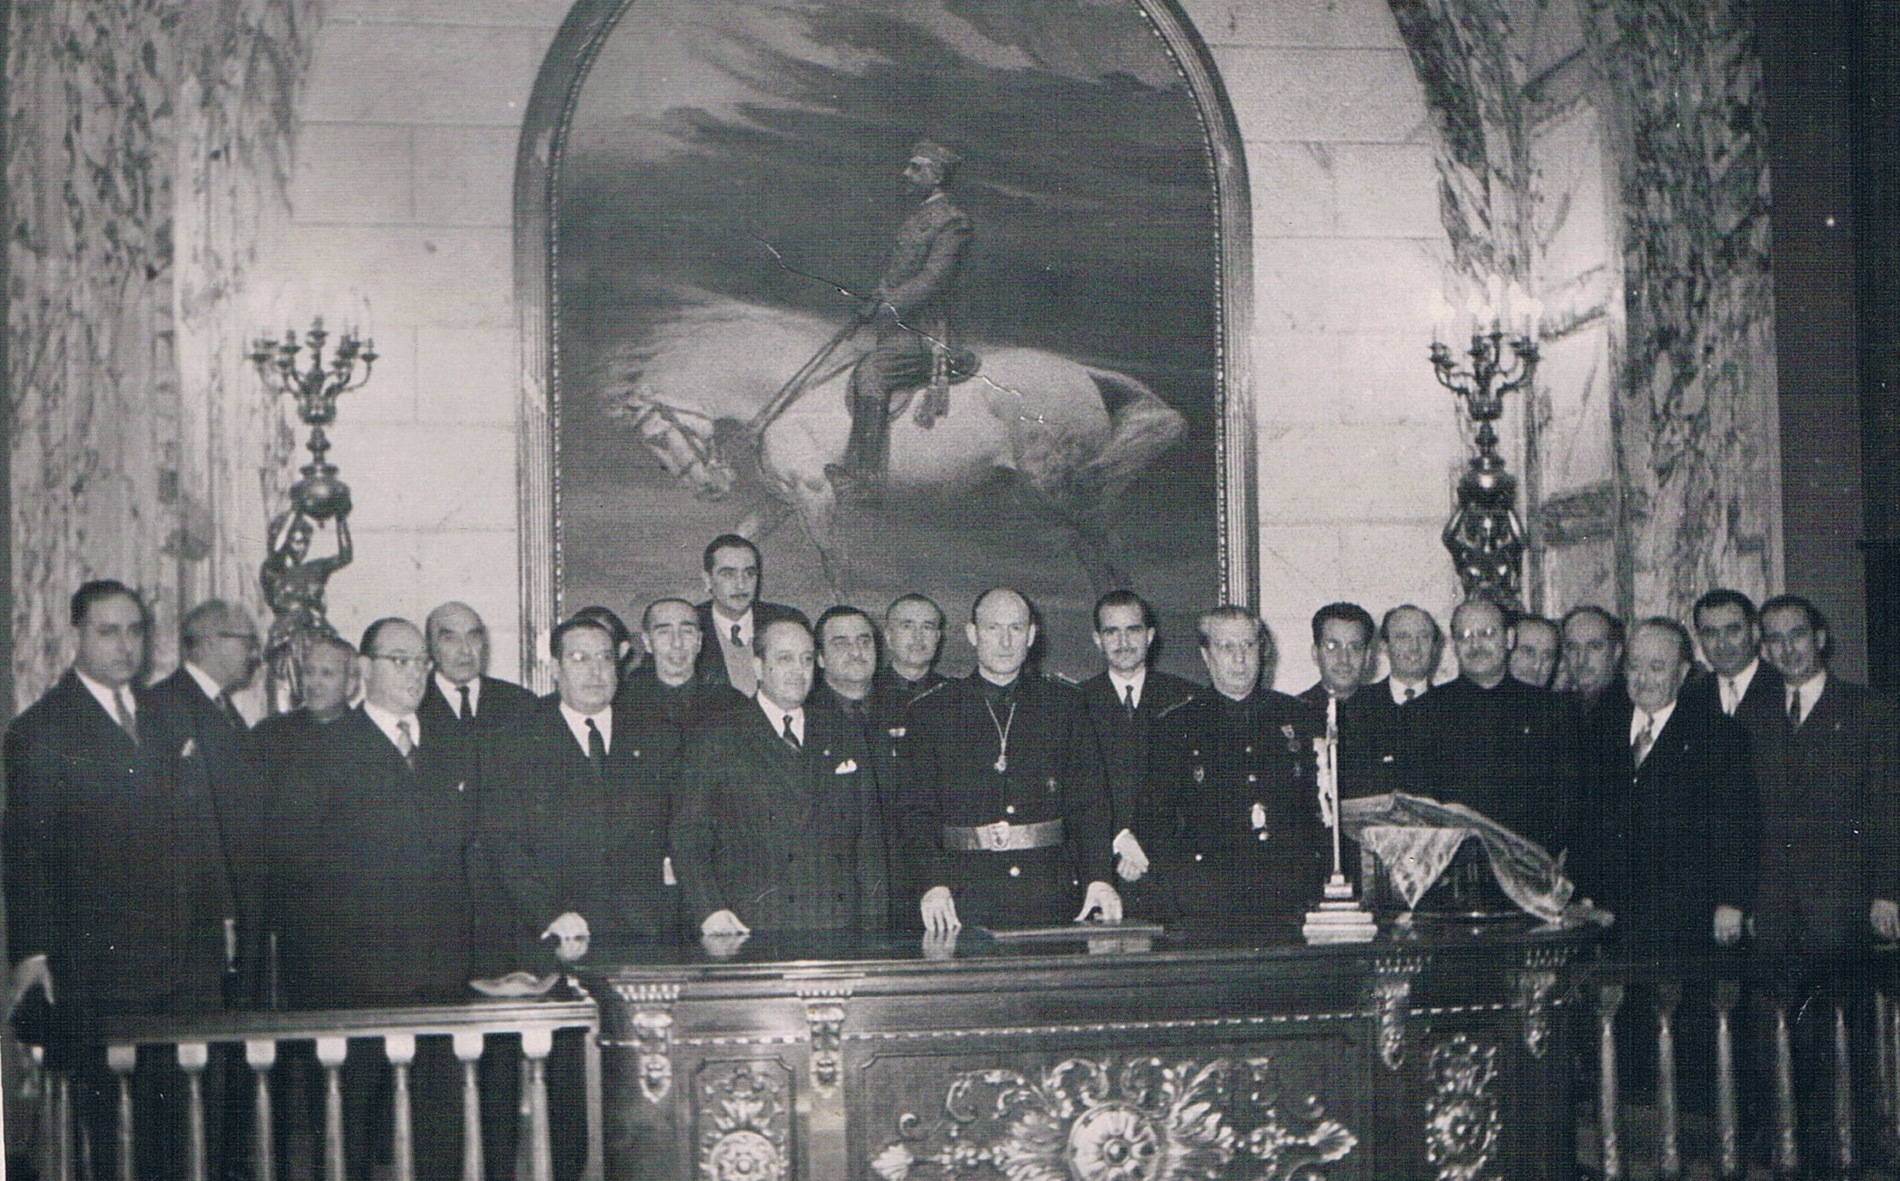 El mateix retrat de Franco, sense el braç en alt, després de ser repintat (1946).